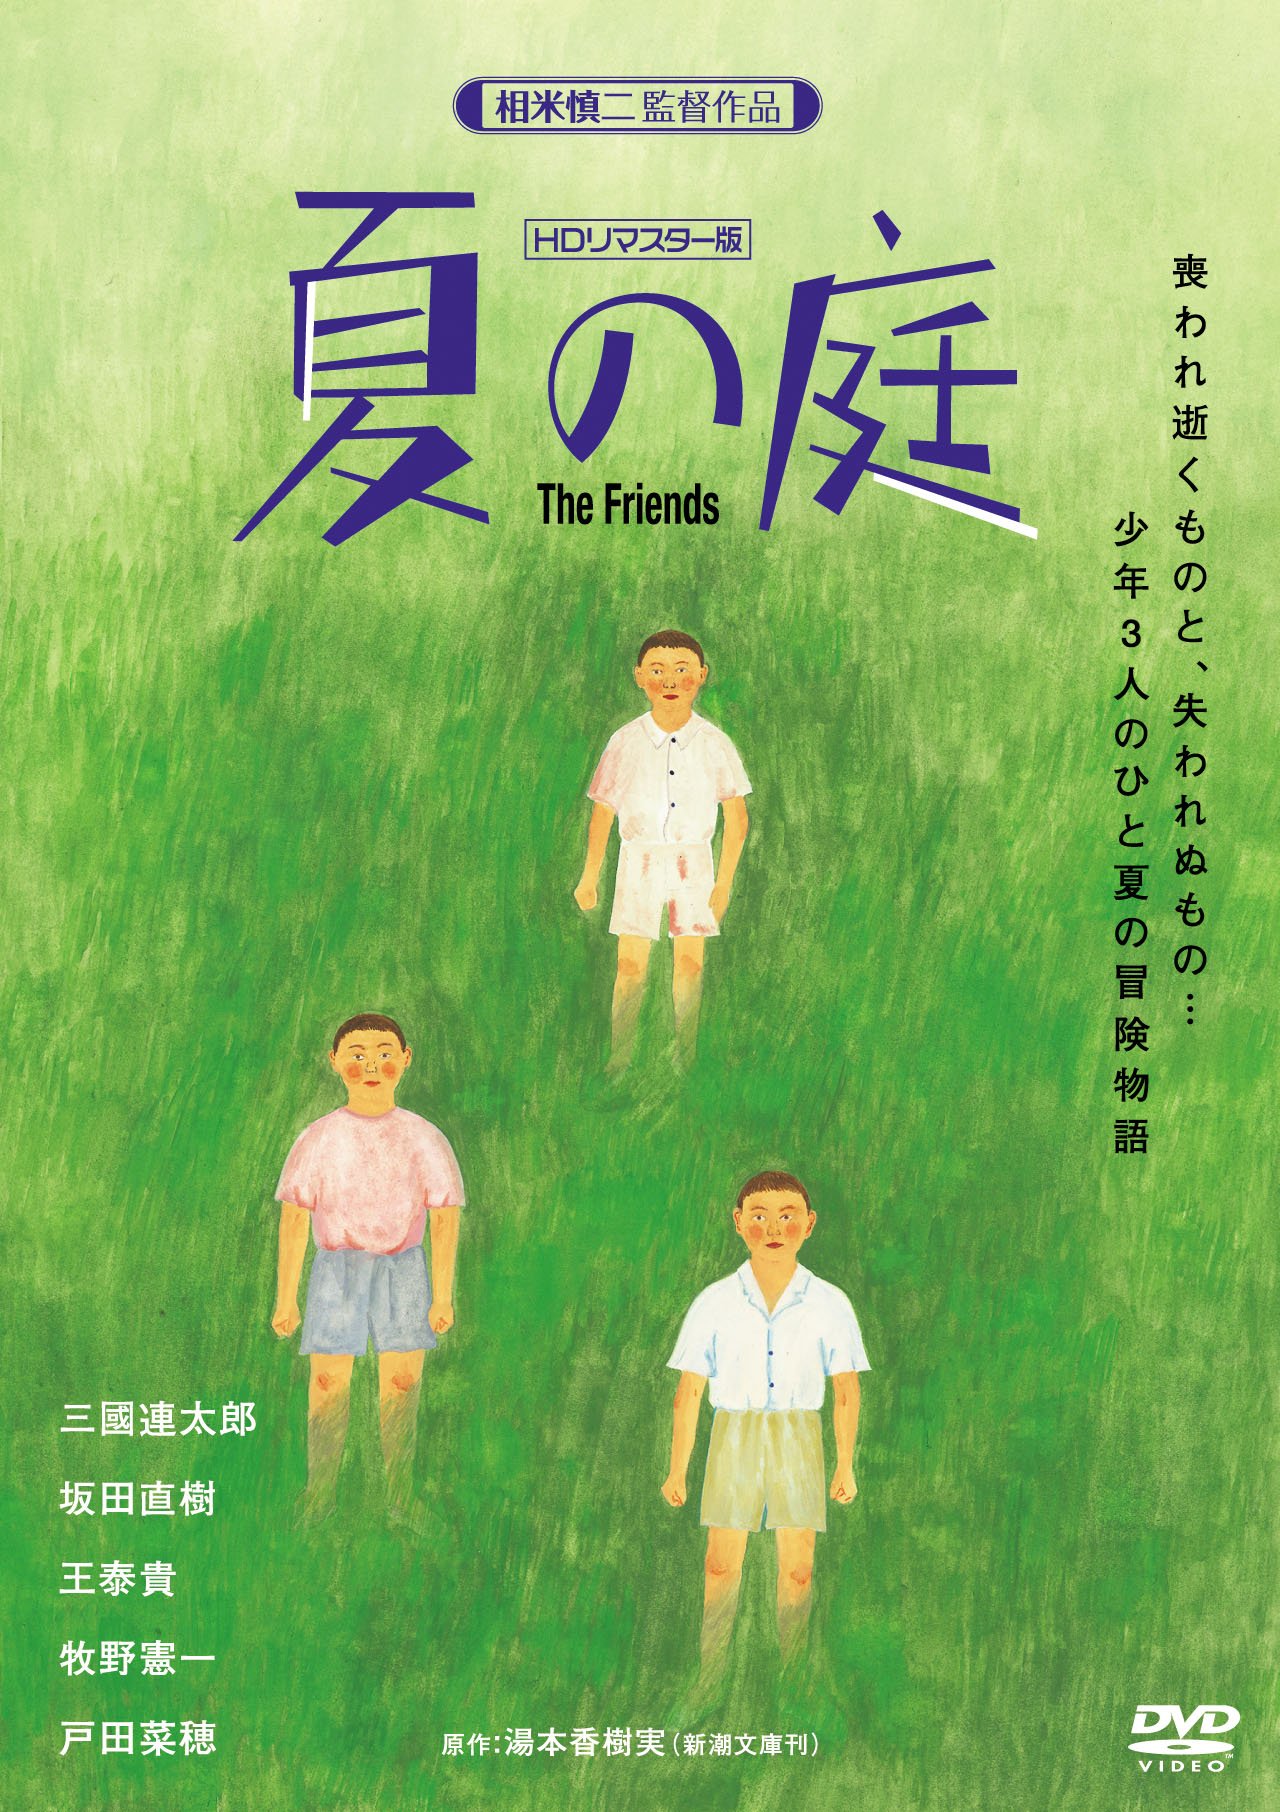 夏の庭-The Friends- (HDリマスター版) DVD